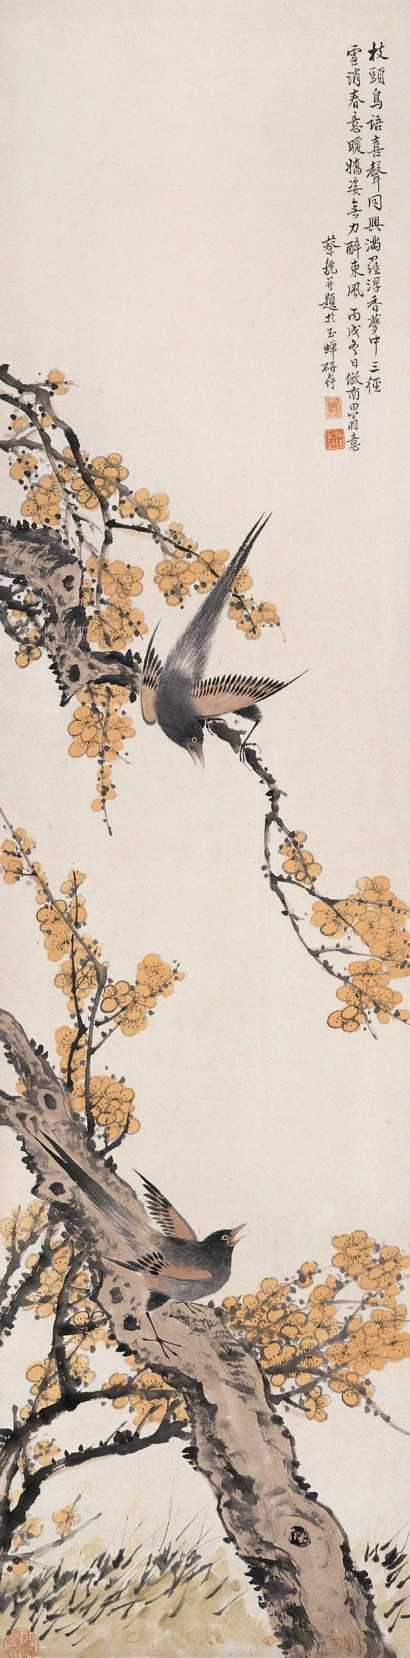 蔡铣 丙戌(1946)年作 枝头鸟语 立轴